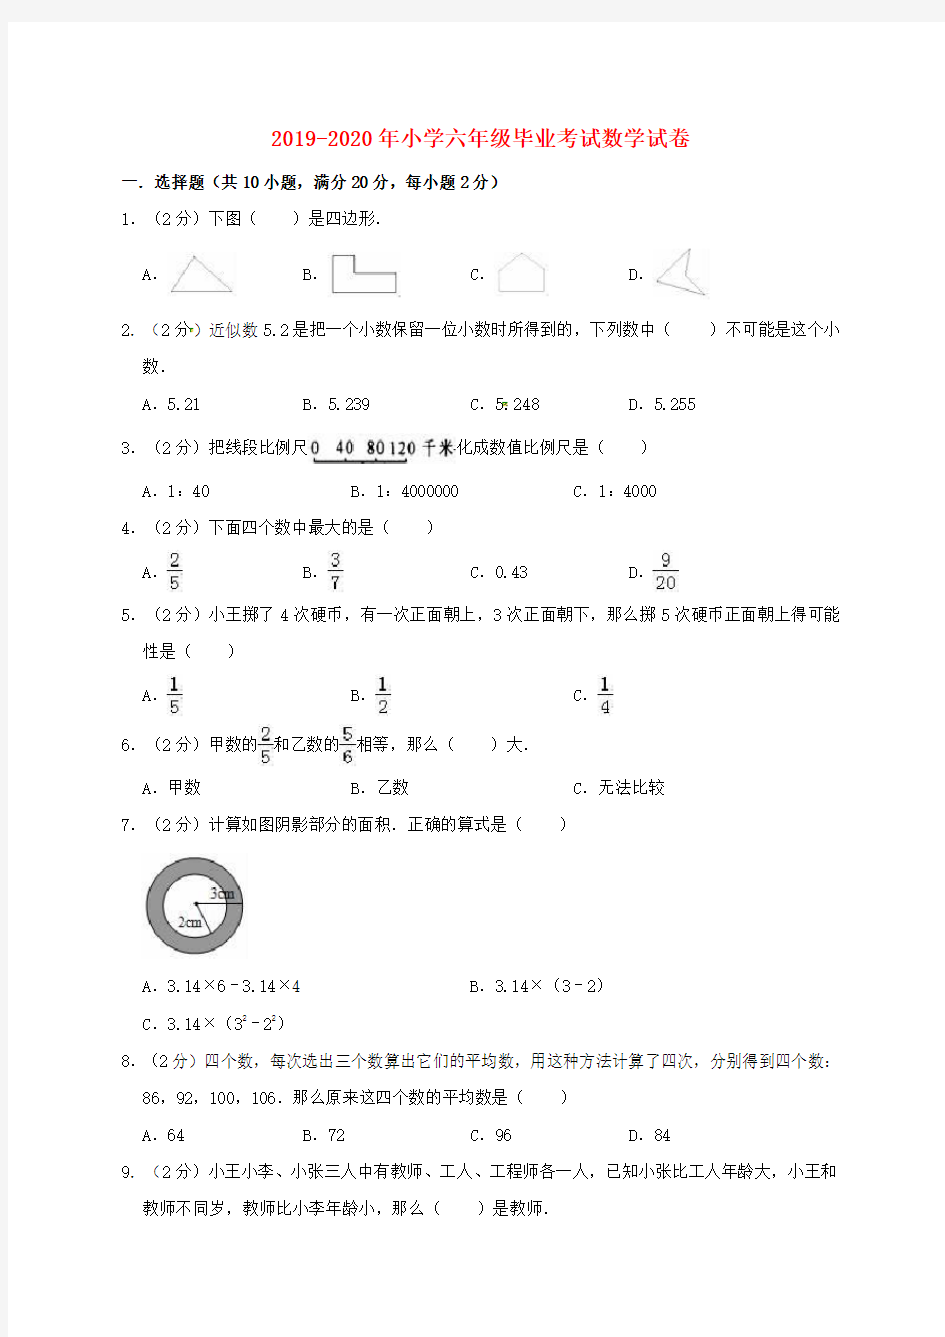 (通用版)2019_2020年小升初数学模拟考试试卷(九)